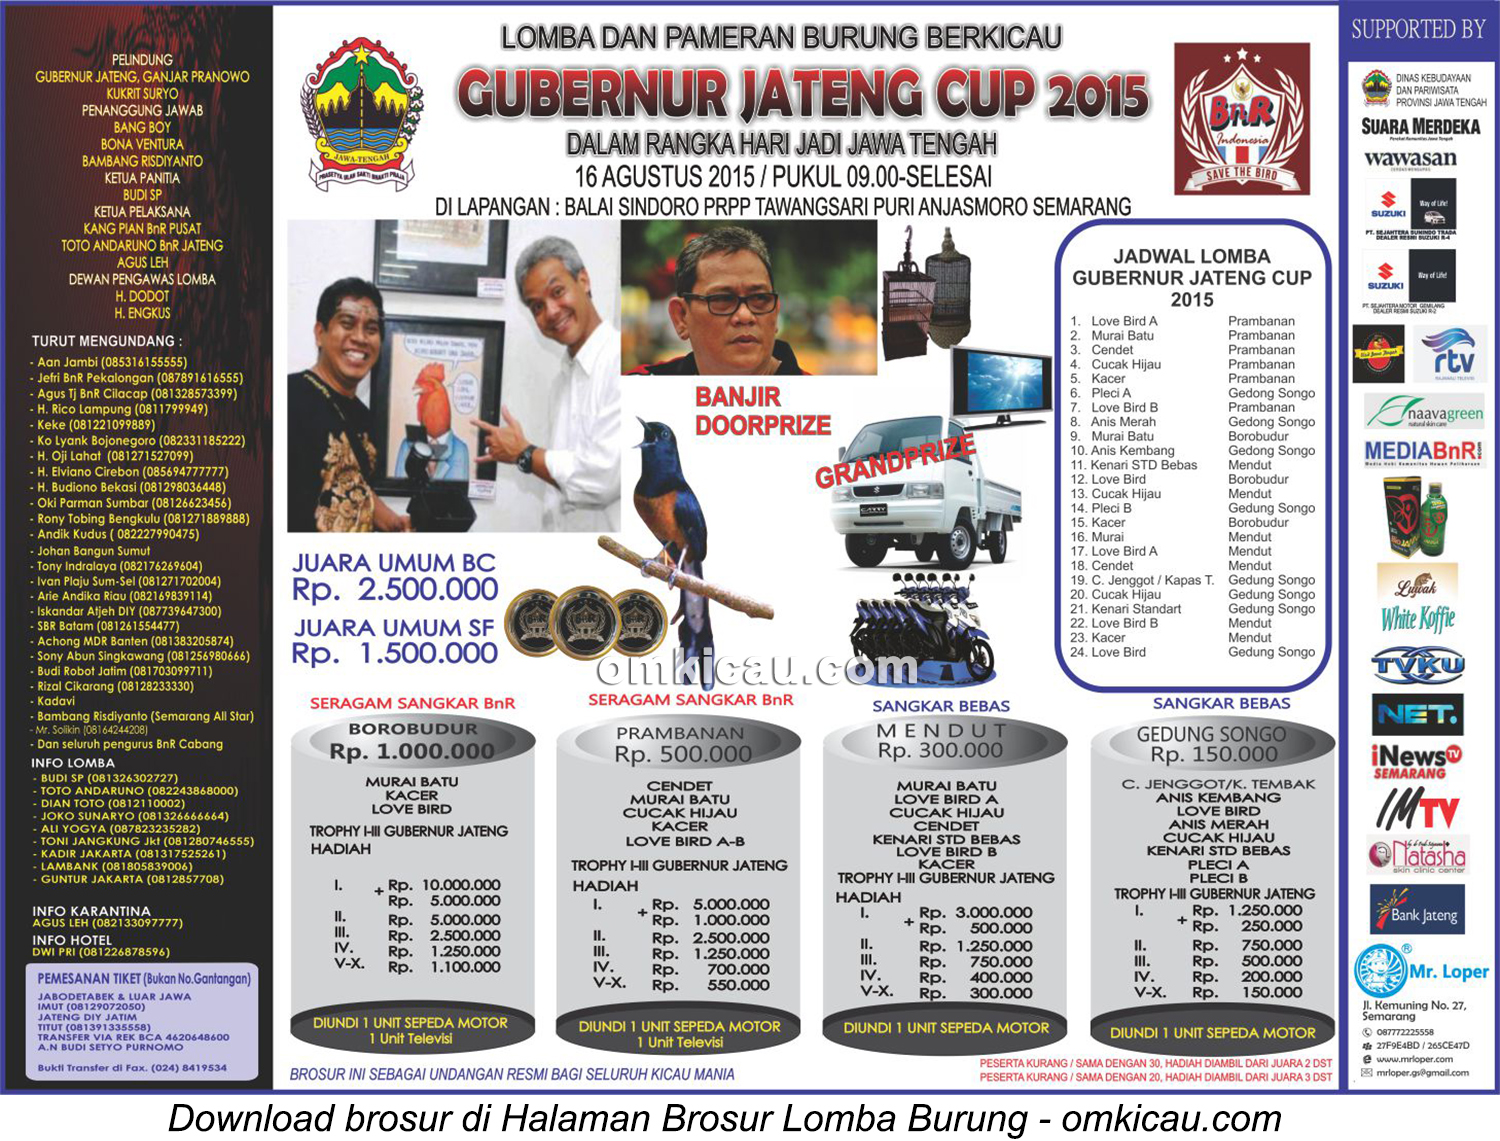 Brosur revisi Lomba Burung Berkicau Gubernur Jateng Cup, Semarang, 16 Agustus 2015